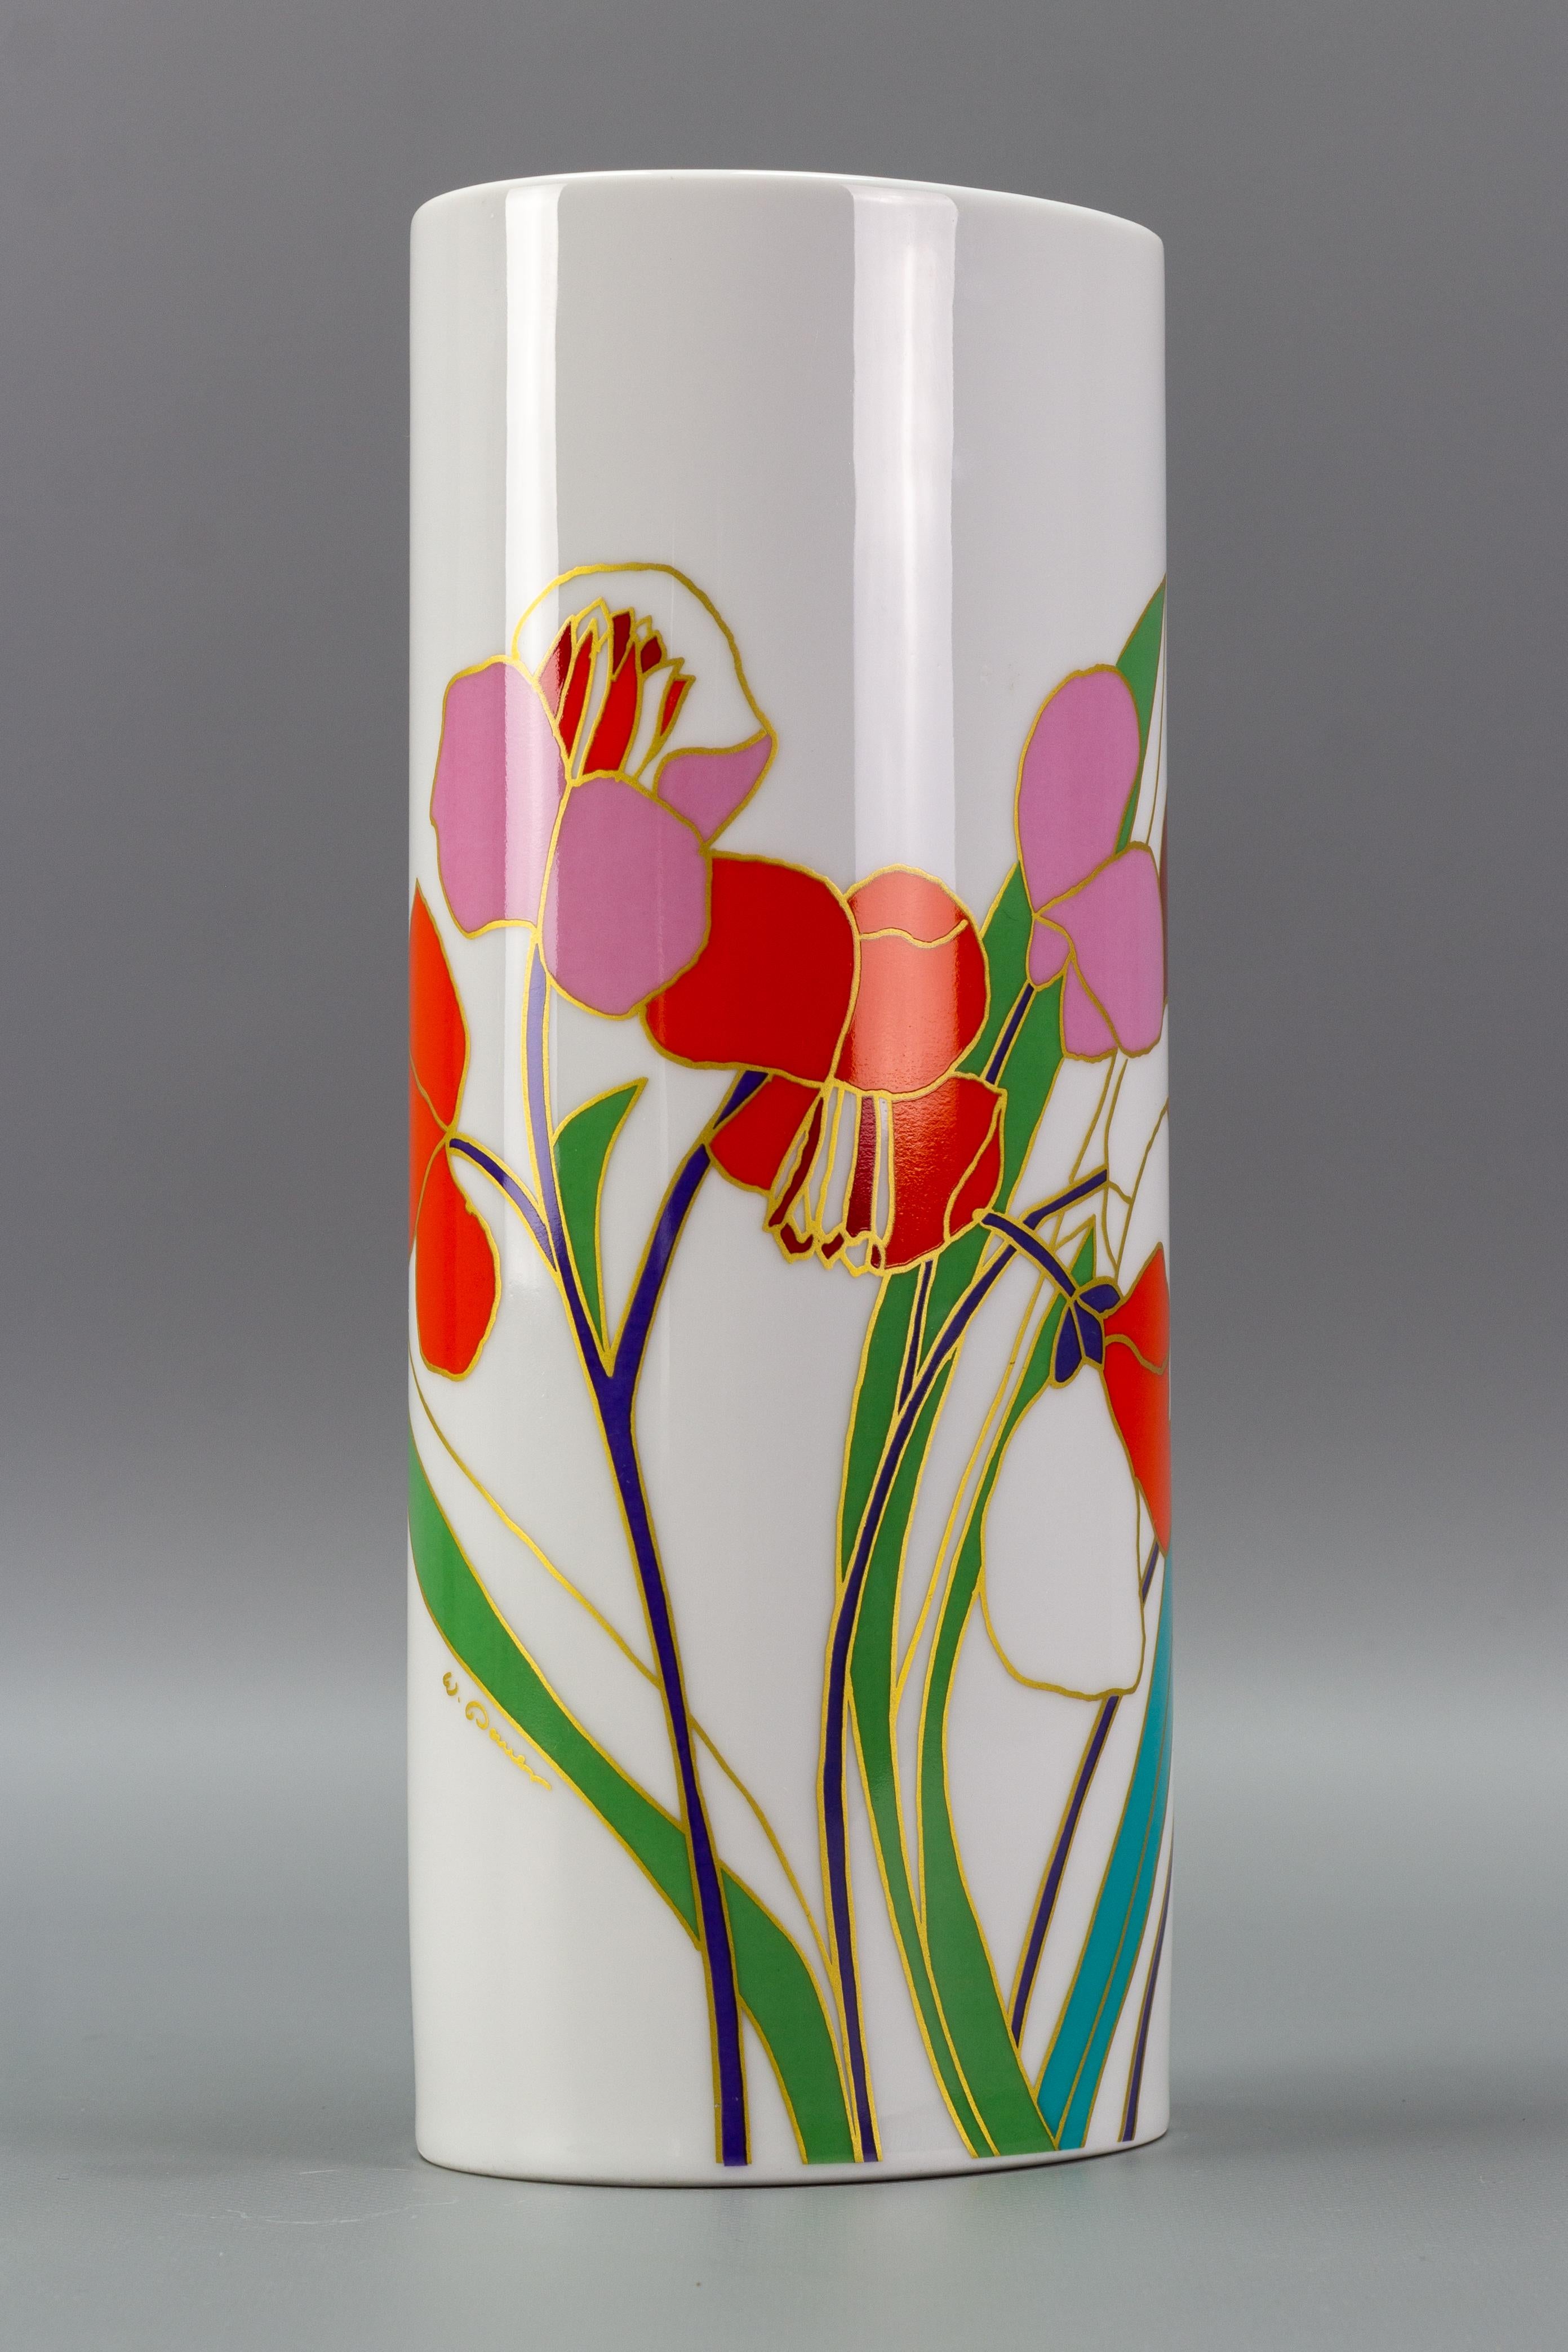 Handbemalte Porzellanvase von Rosenthal, entworfen von Wolf Bauer, Studio-Linie, Deutschland, 1970er-1980er Jahre. 
Die weiße Porzellanvase hat eine zylindrische Form und ist mit bunten, goldfarbenen Blüten und Blättern geschmückt.
Die Vase ist mit